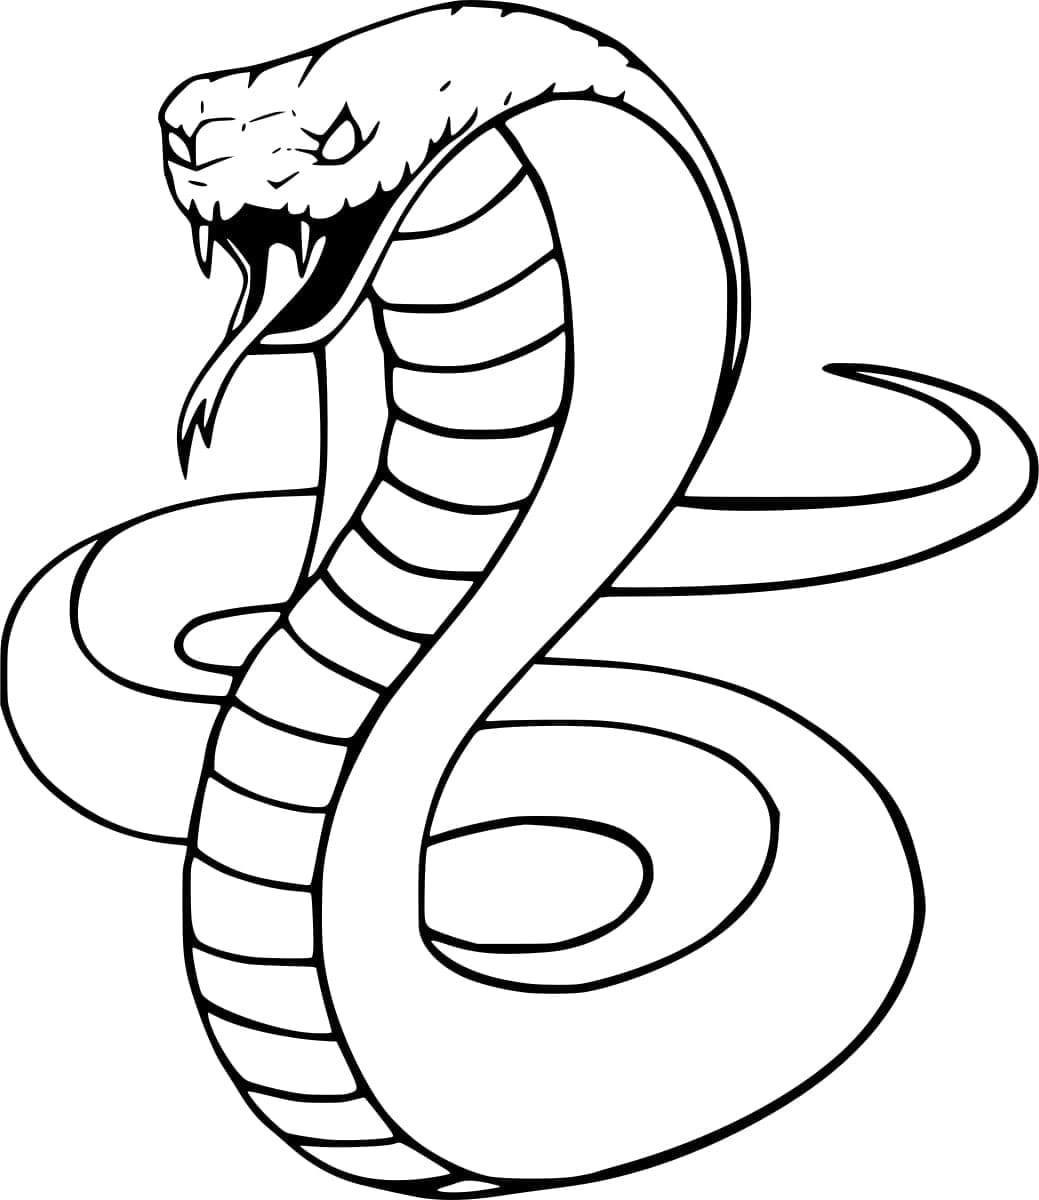 Serpent Cobra Royal coloring page